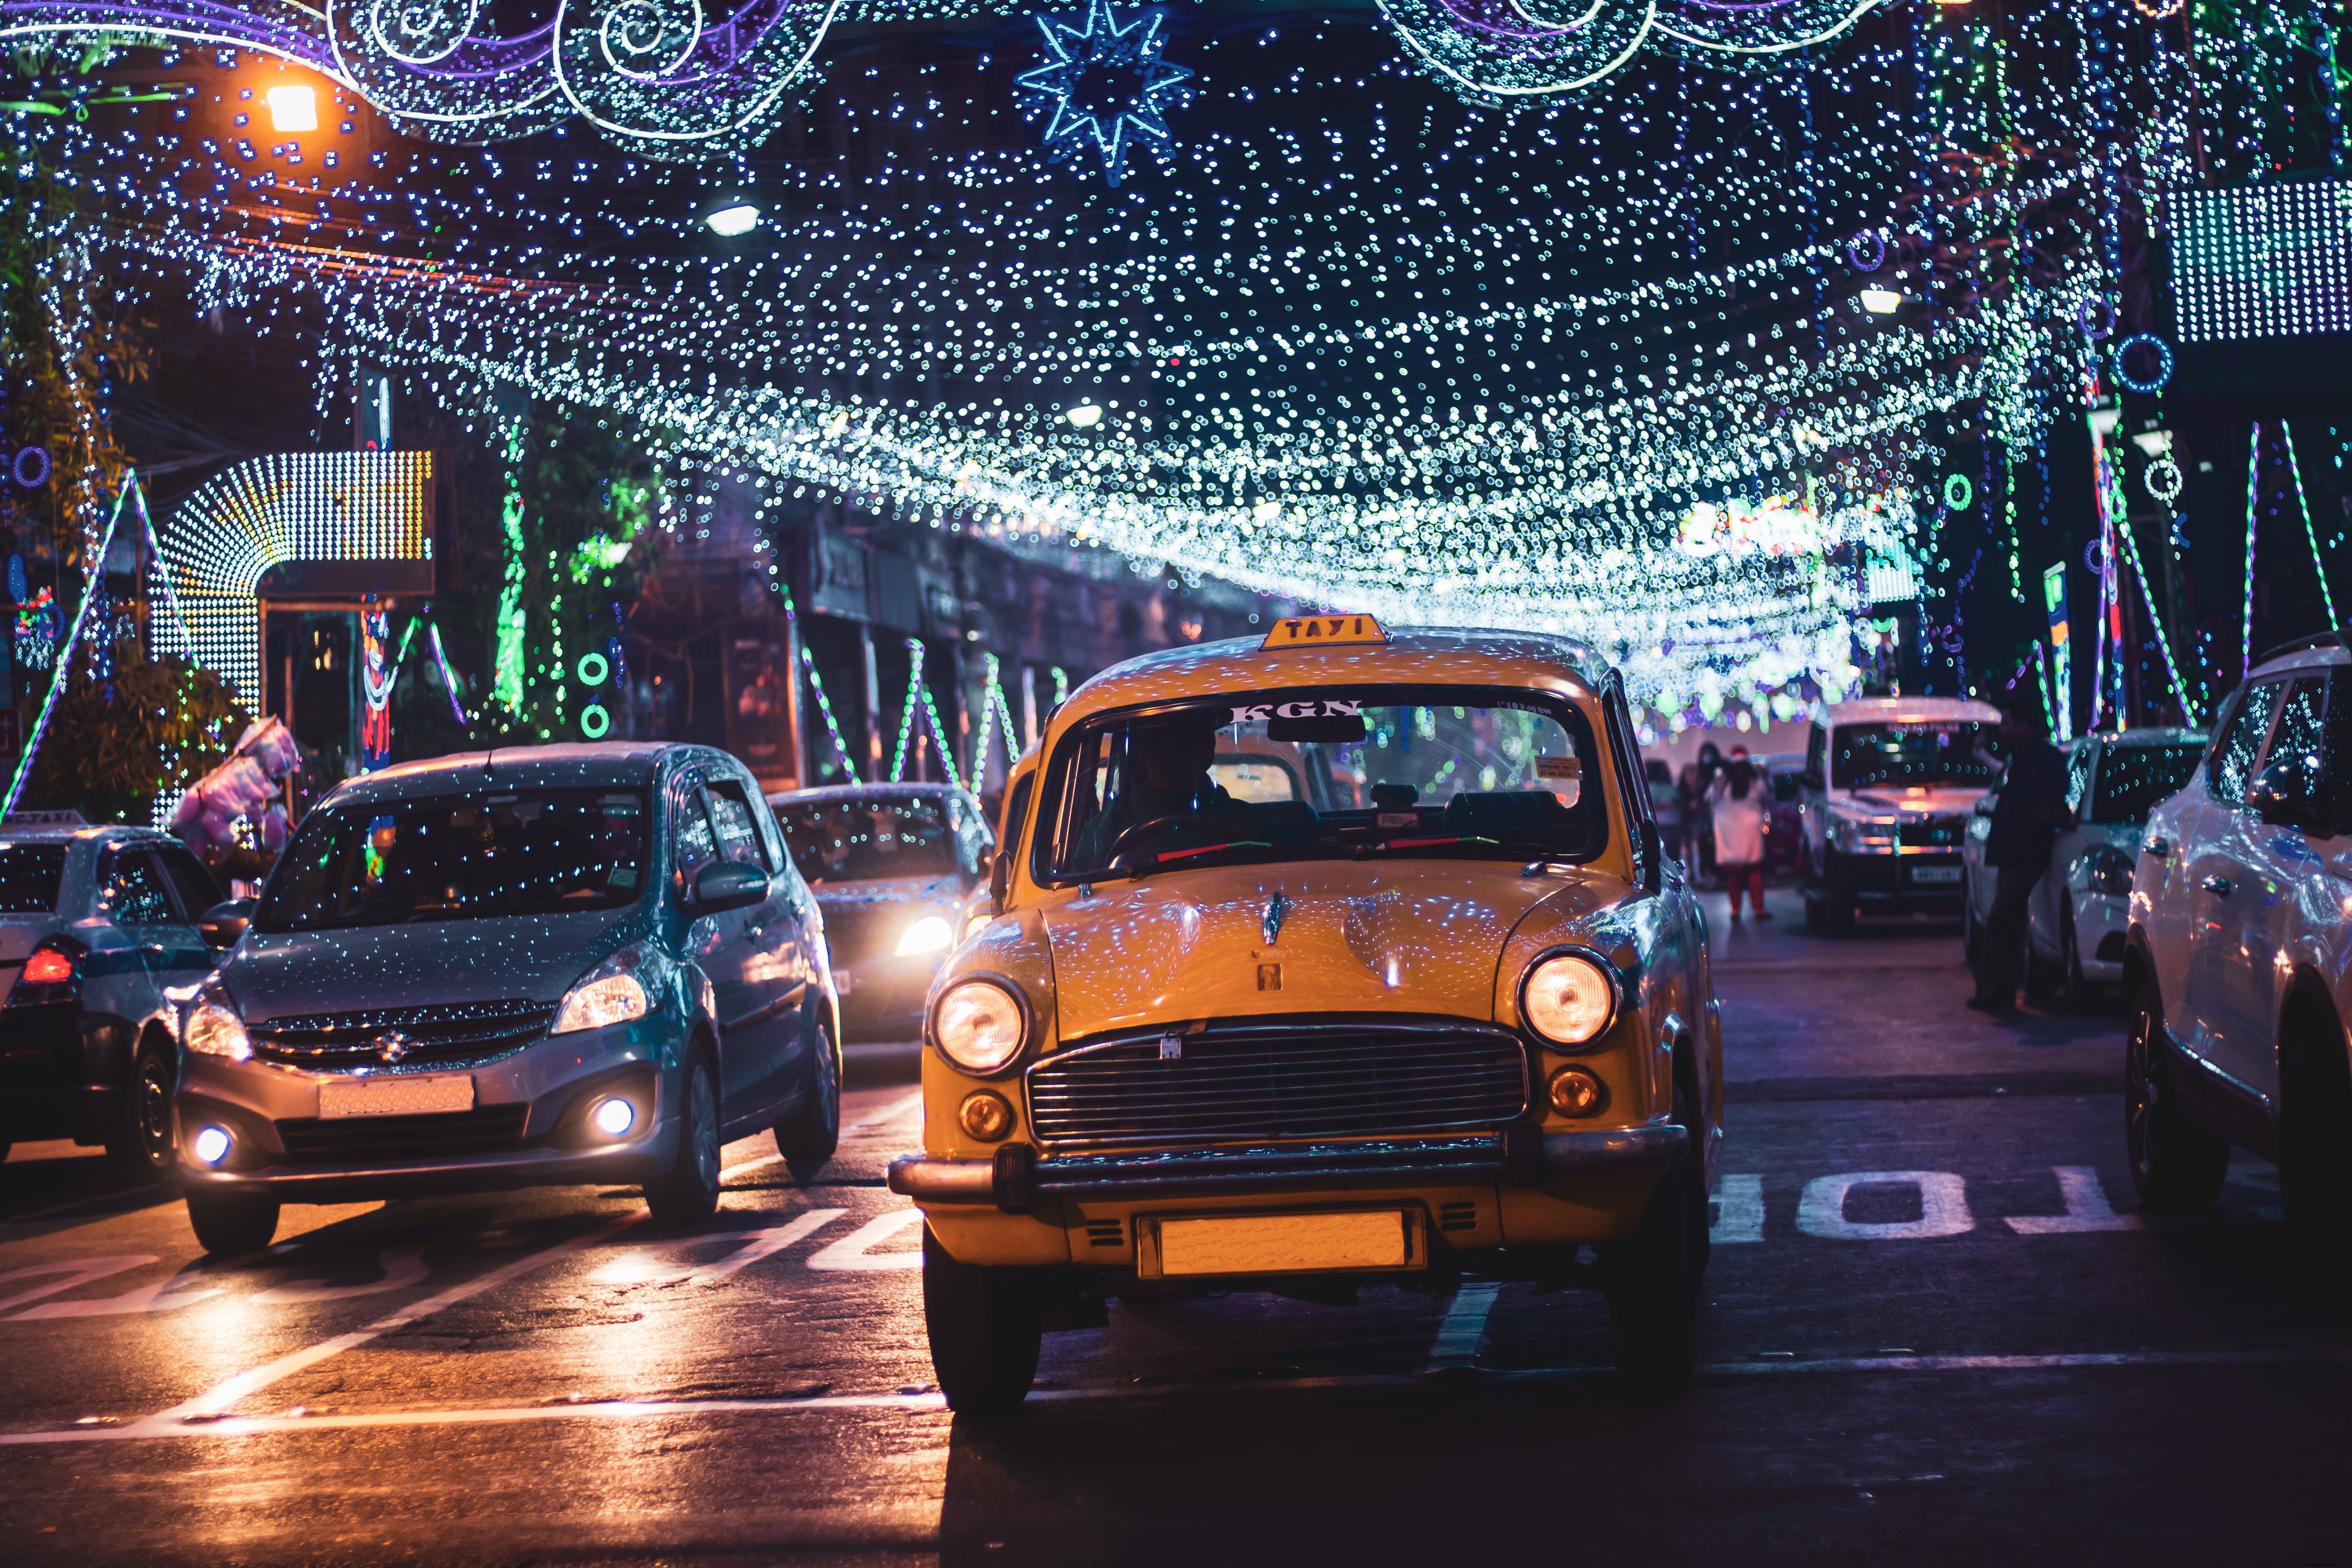 Voitures sur une rue de la ville illuminée la nuit Photo 